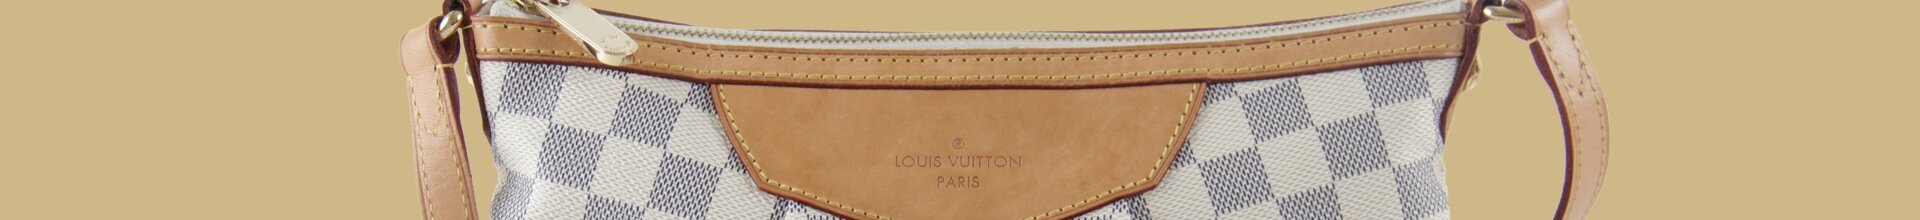 Louis Vuitton Shopper Schwarz In Der Kaufberatung!